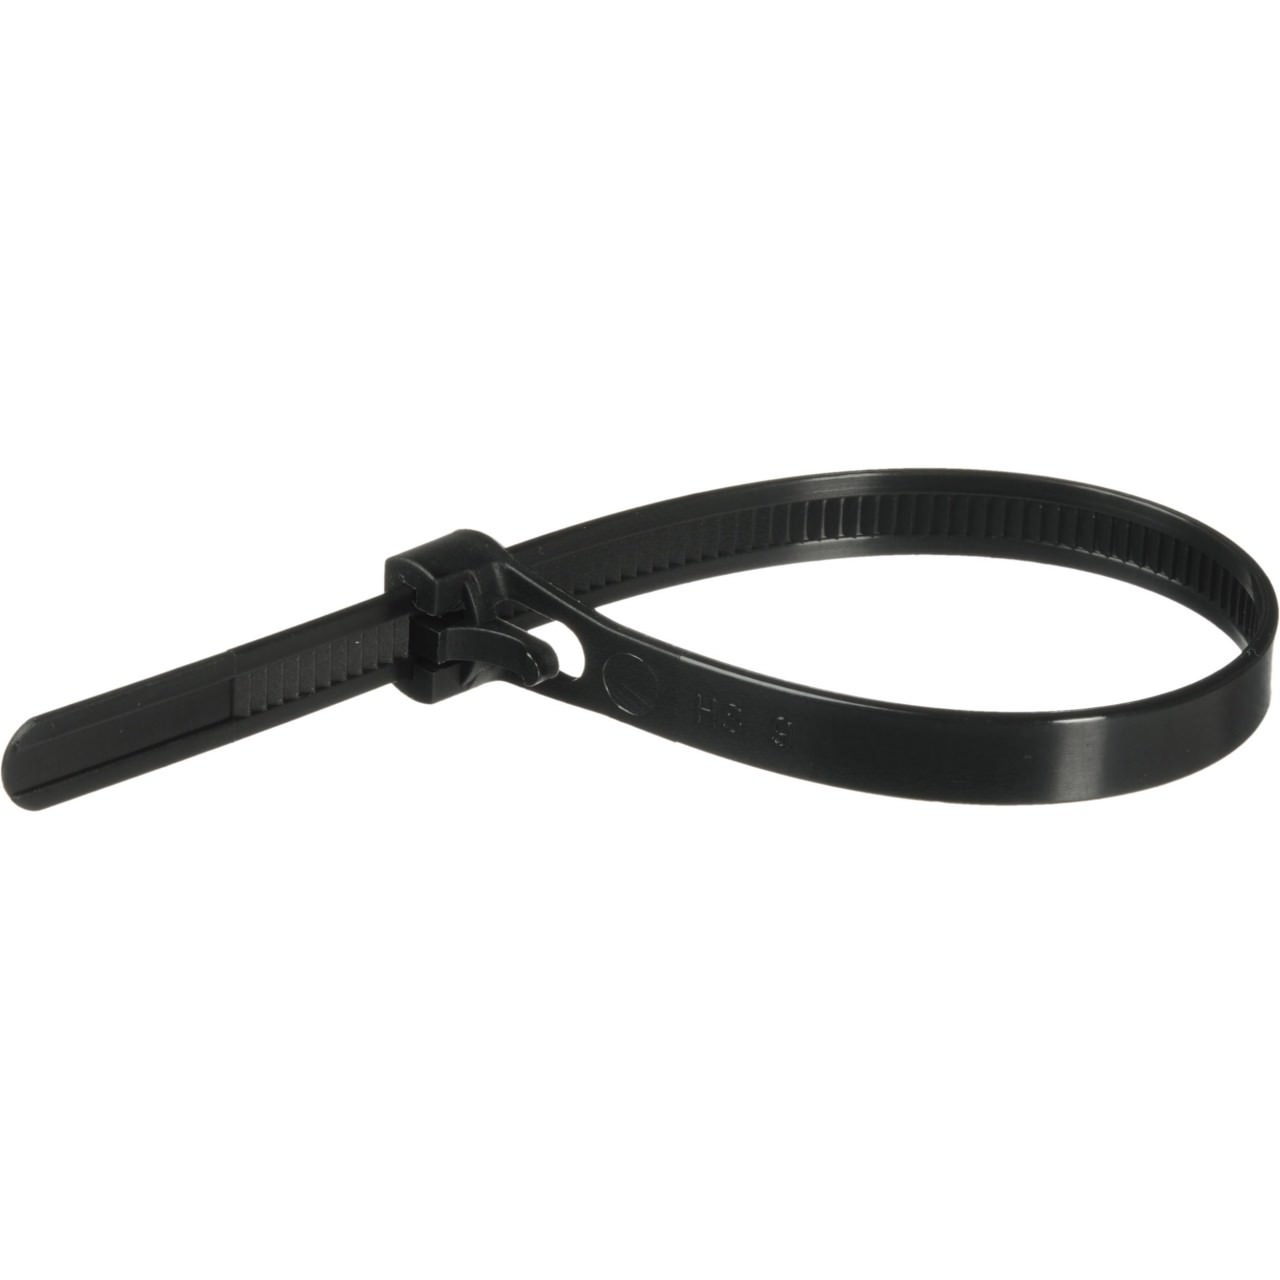 Reuseable Black Zip Tie Wraps (8mm x 200mm) - MODDIY